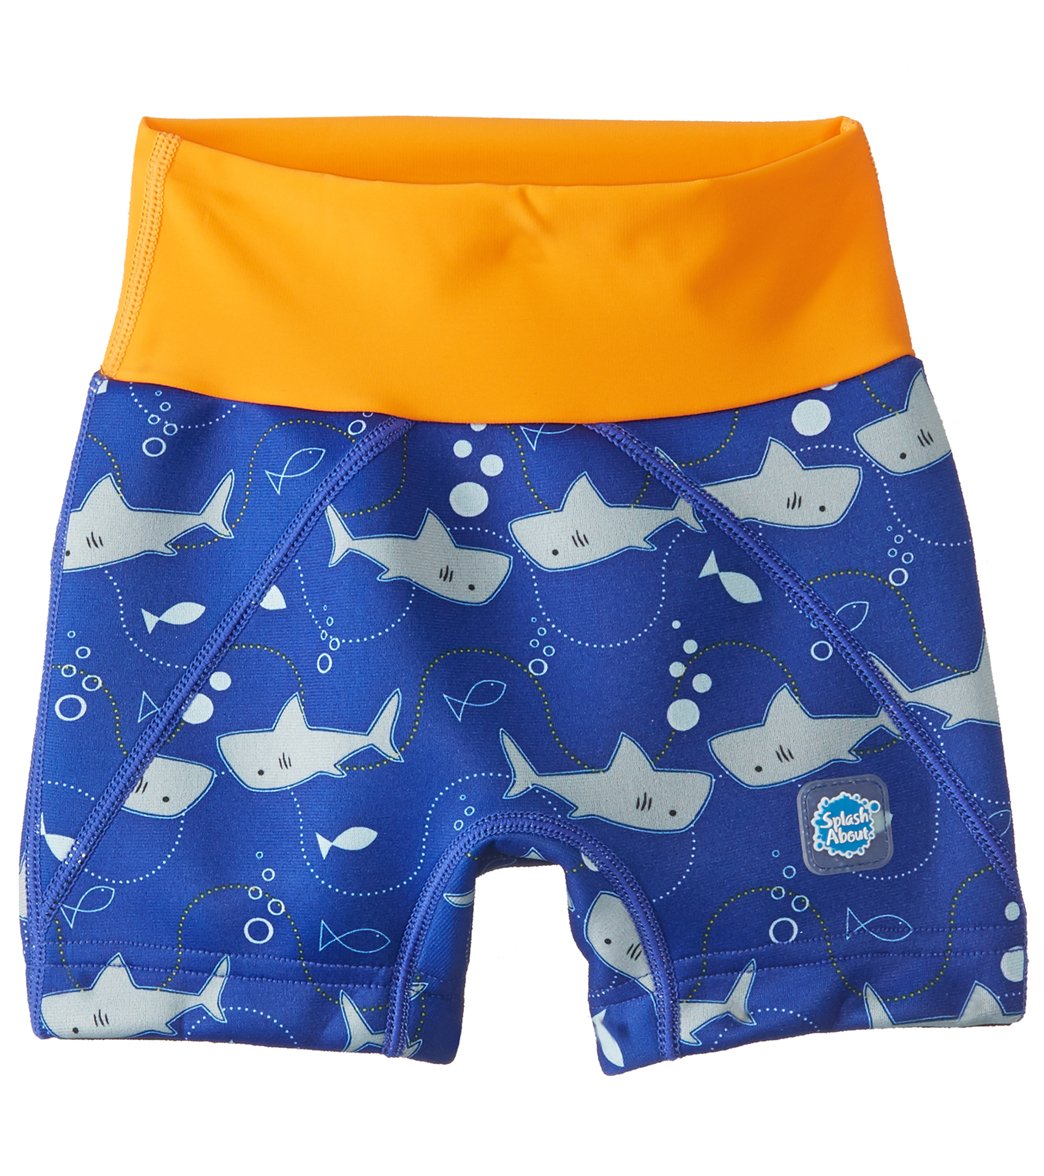 Splash About Swim Jammers/ Shorts 2-4 Years - Shark Orange 3-4 Years Neoprene - Swimoutlet.com